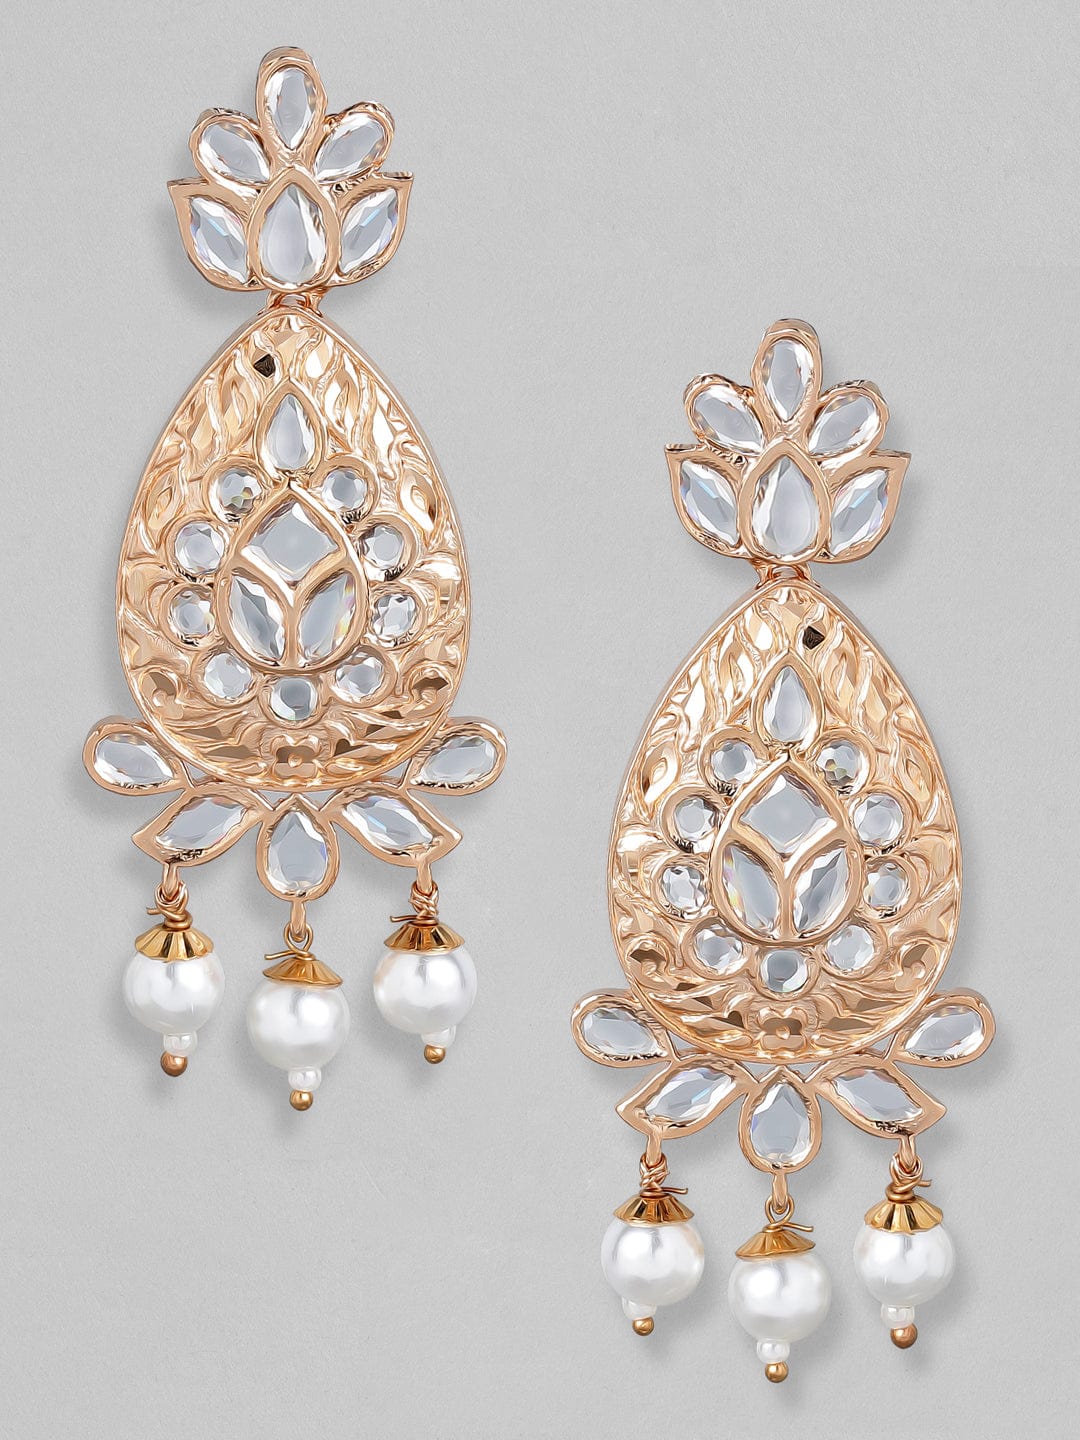 Rubans Rose Gold-Plated & White Teardrop Shaped Drop Earrings Earrings